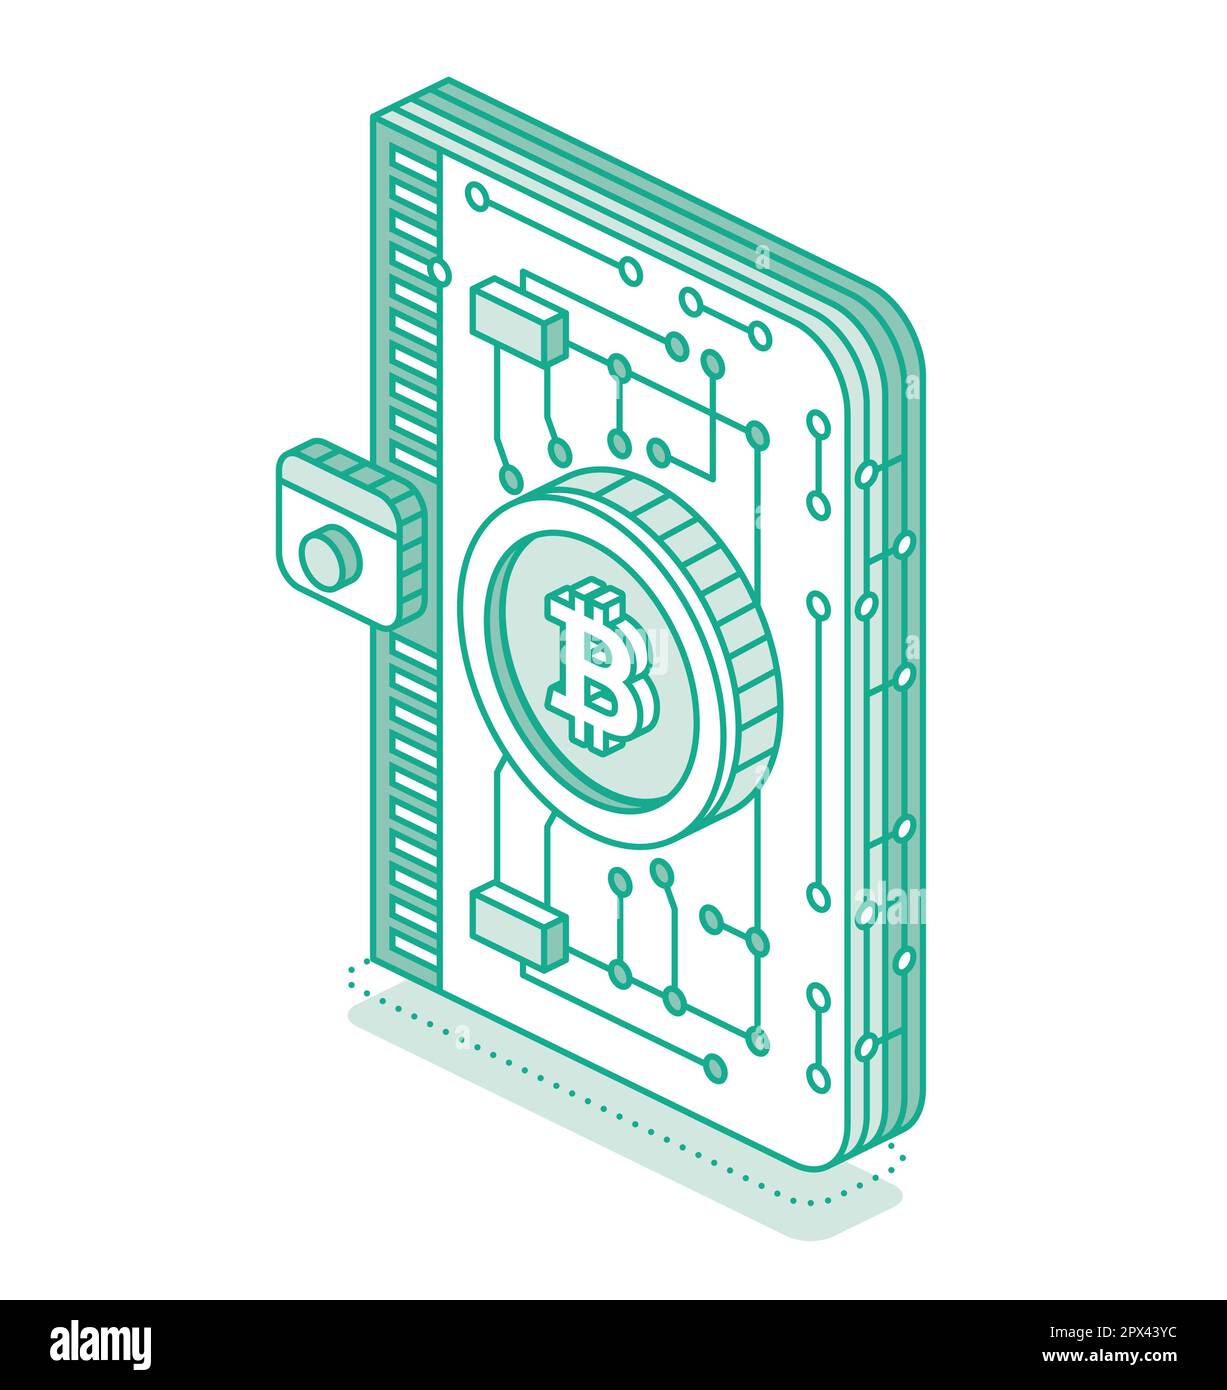 Portefeuille de crypto-monnaie isométrique avec crypto-monnaie. Description détaillée de l'icône de l'application de stockage de crypto-monnaie Technologie blockchain. Illustration vectorielle. Web 3 O Illustration de Vecteur